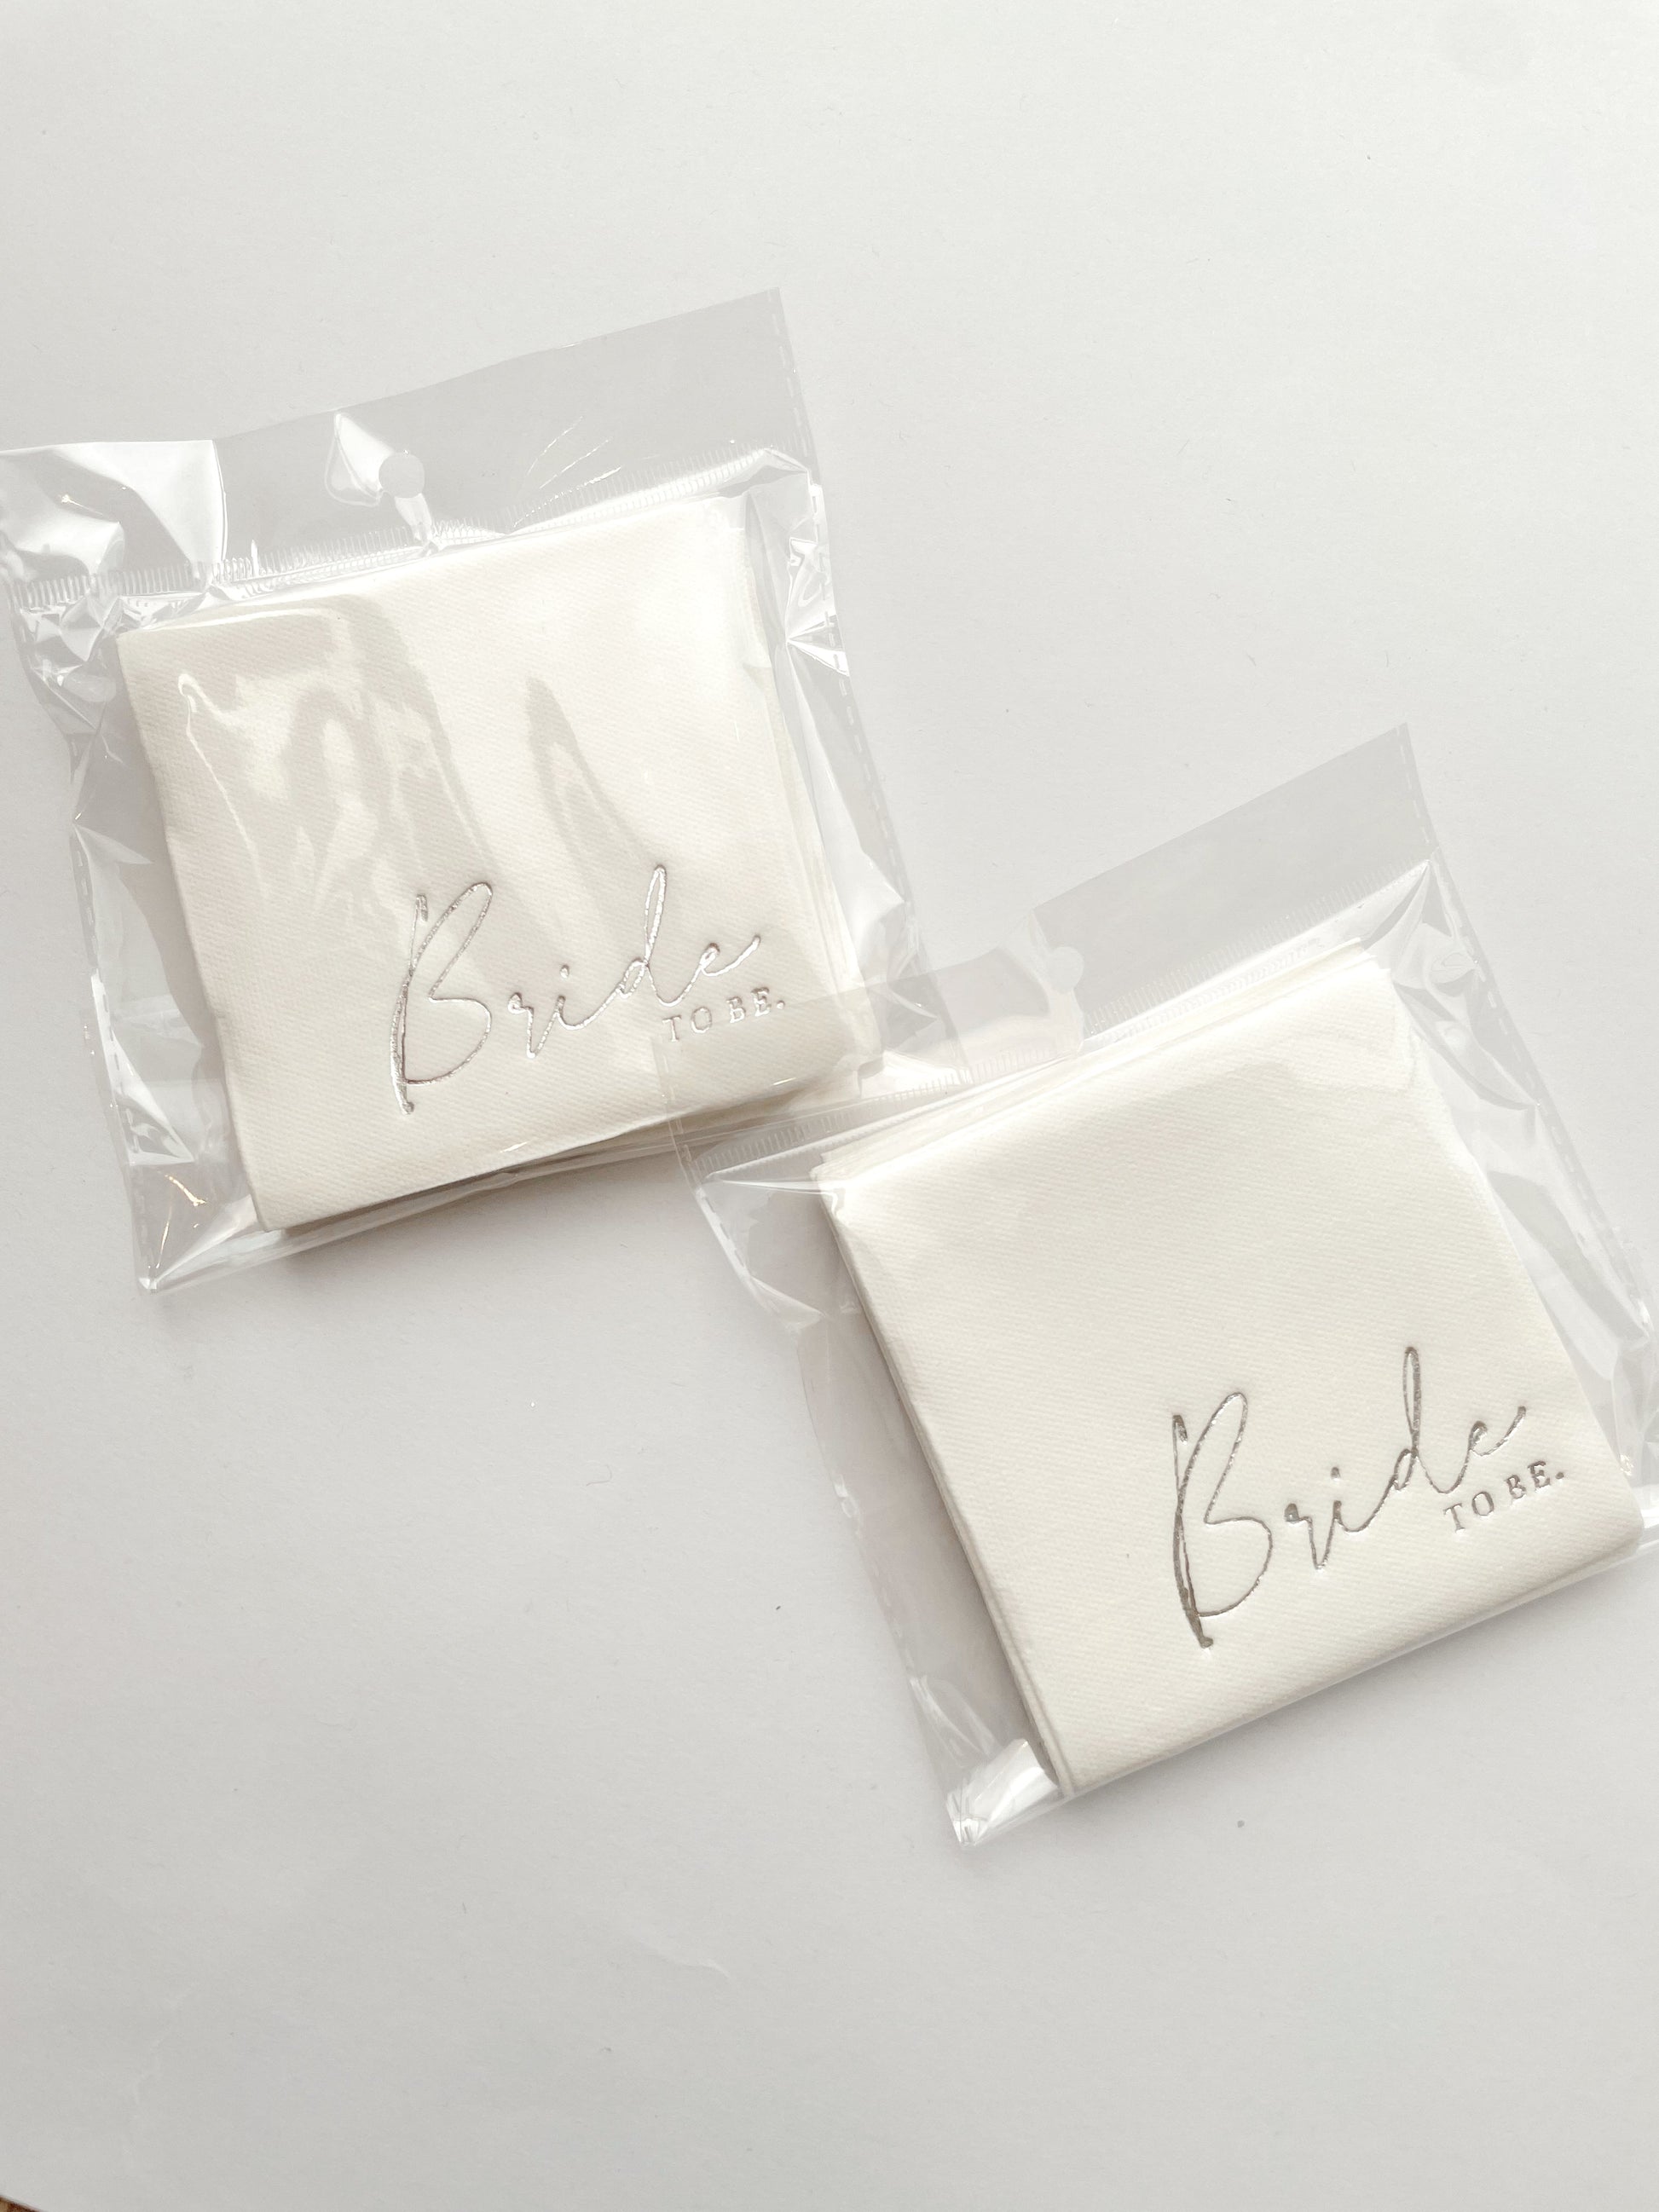 Servilletas cocteleras blancas con letras en foil plateado "Bride to be"